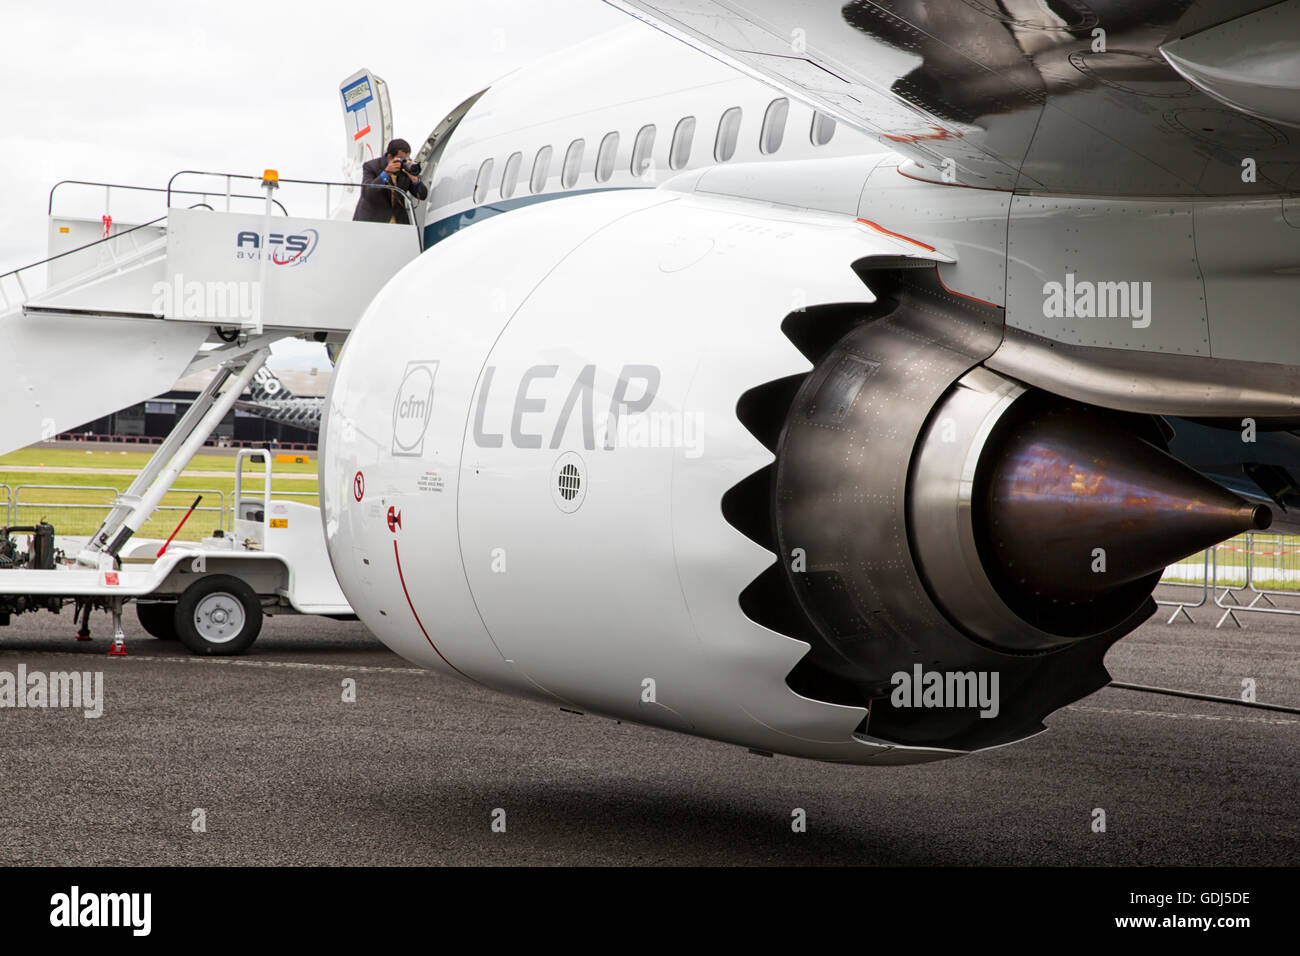 Le nouveau Boeing 737 MAX et le moteur LEAP de CFM International Farnborough 2016 Banque D'Images